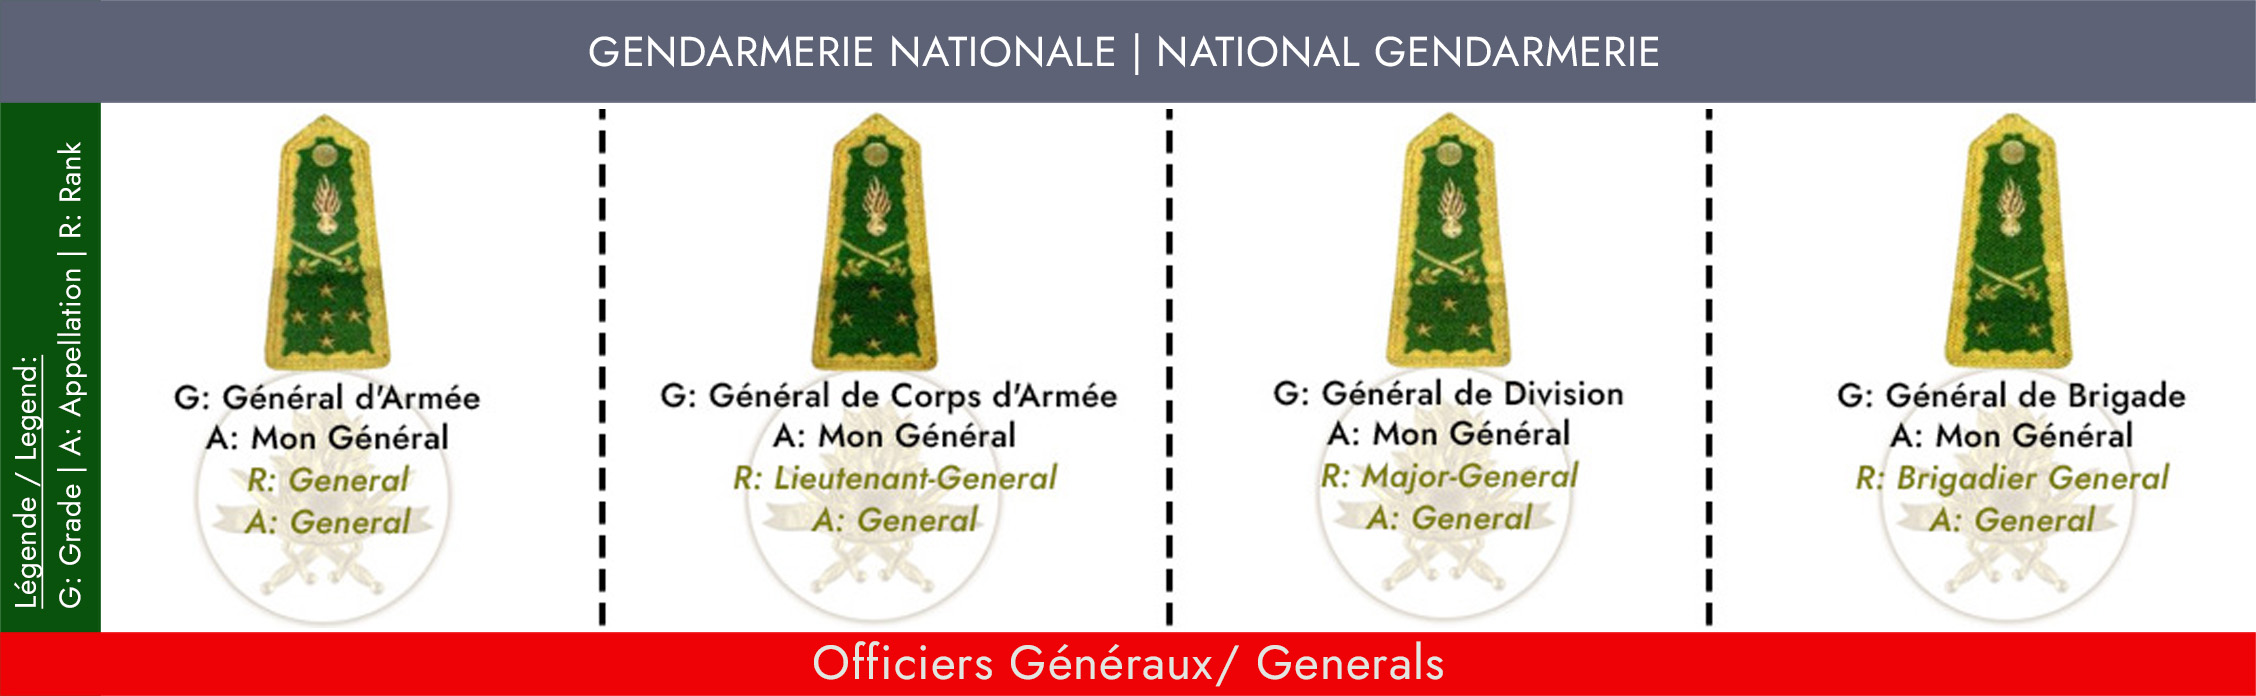 GRADES ET APPELLATIONS OFFICIER GENERAUX GENDARMERIE NATIONALE